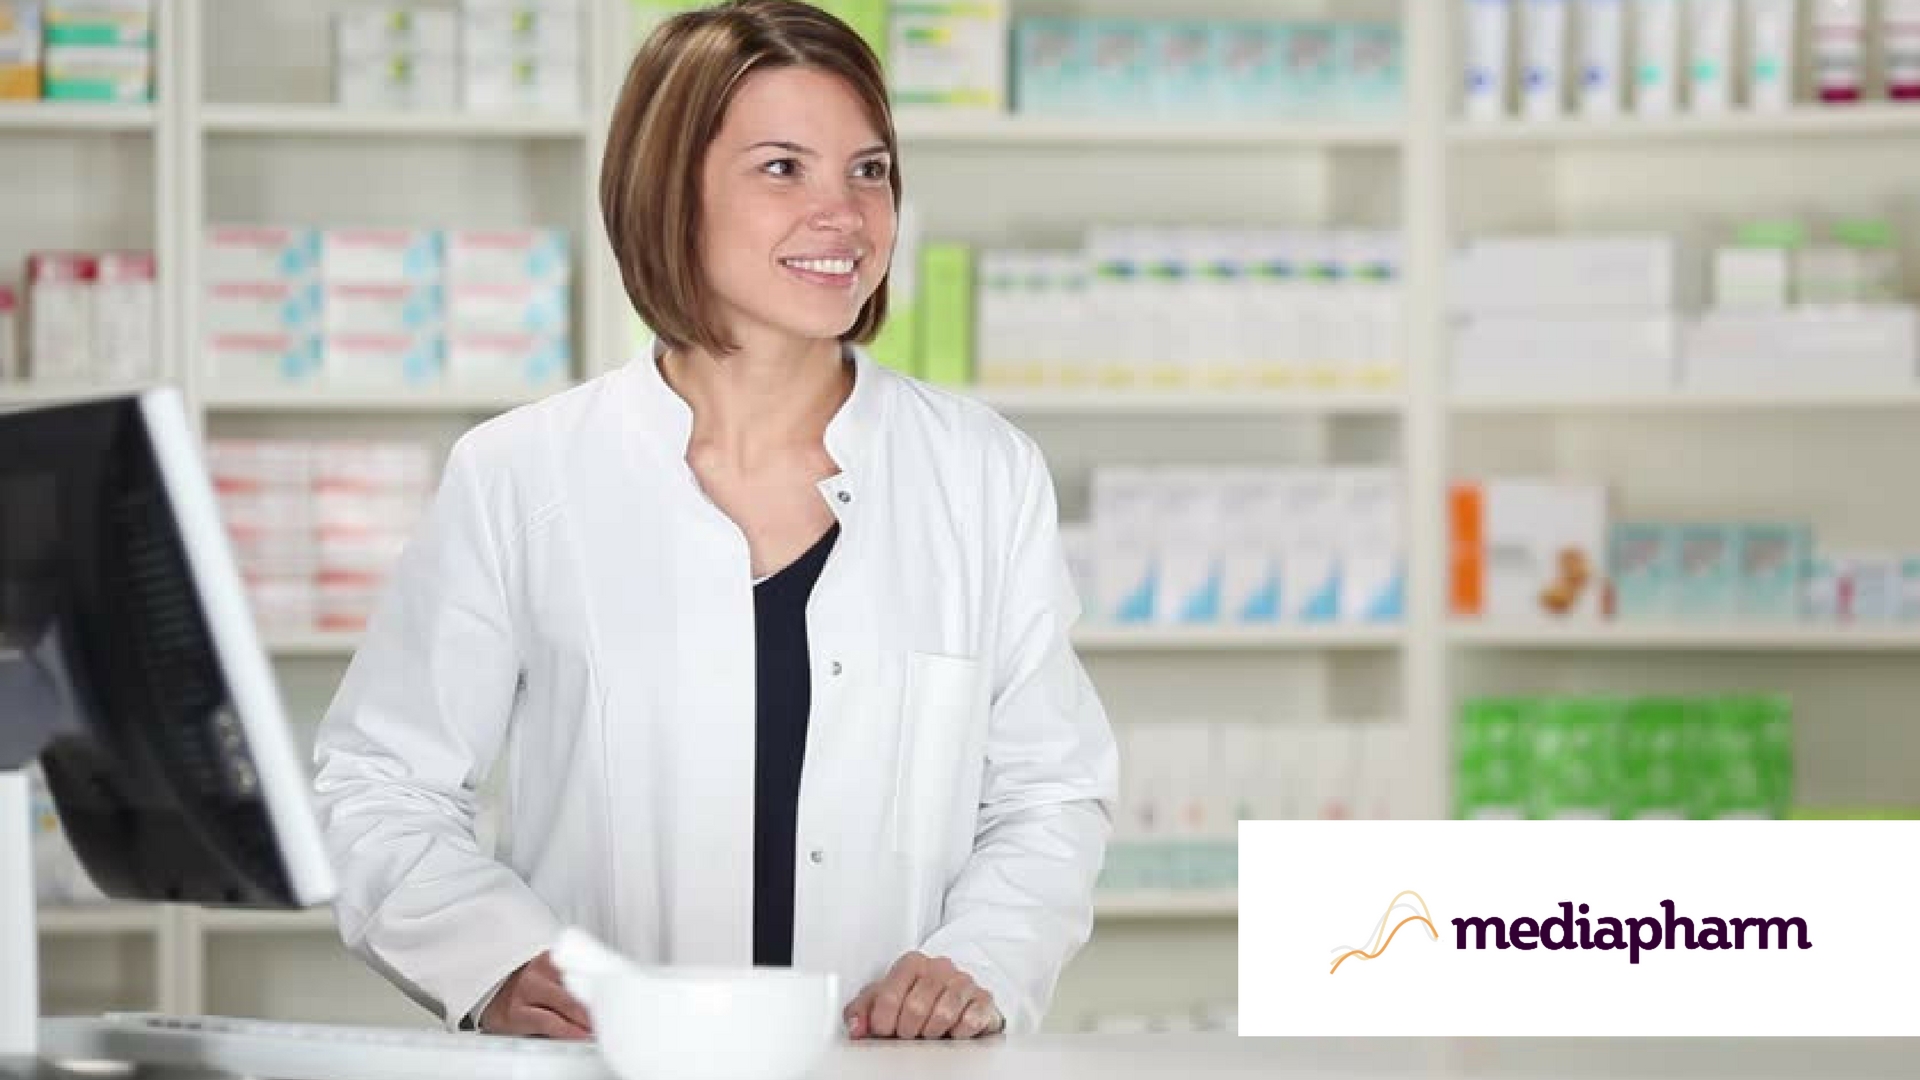 MediaPharm - Pharmacy Training Made Easy